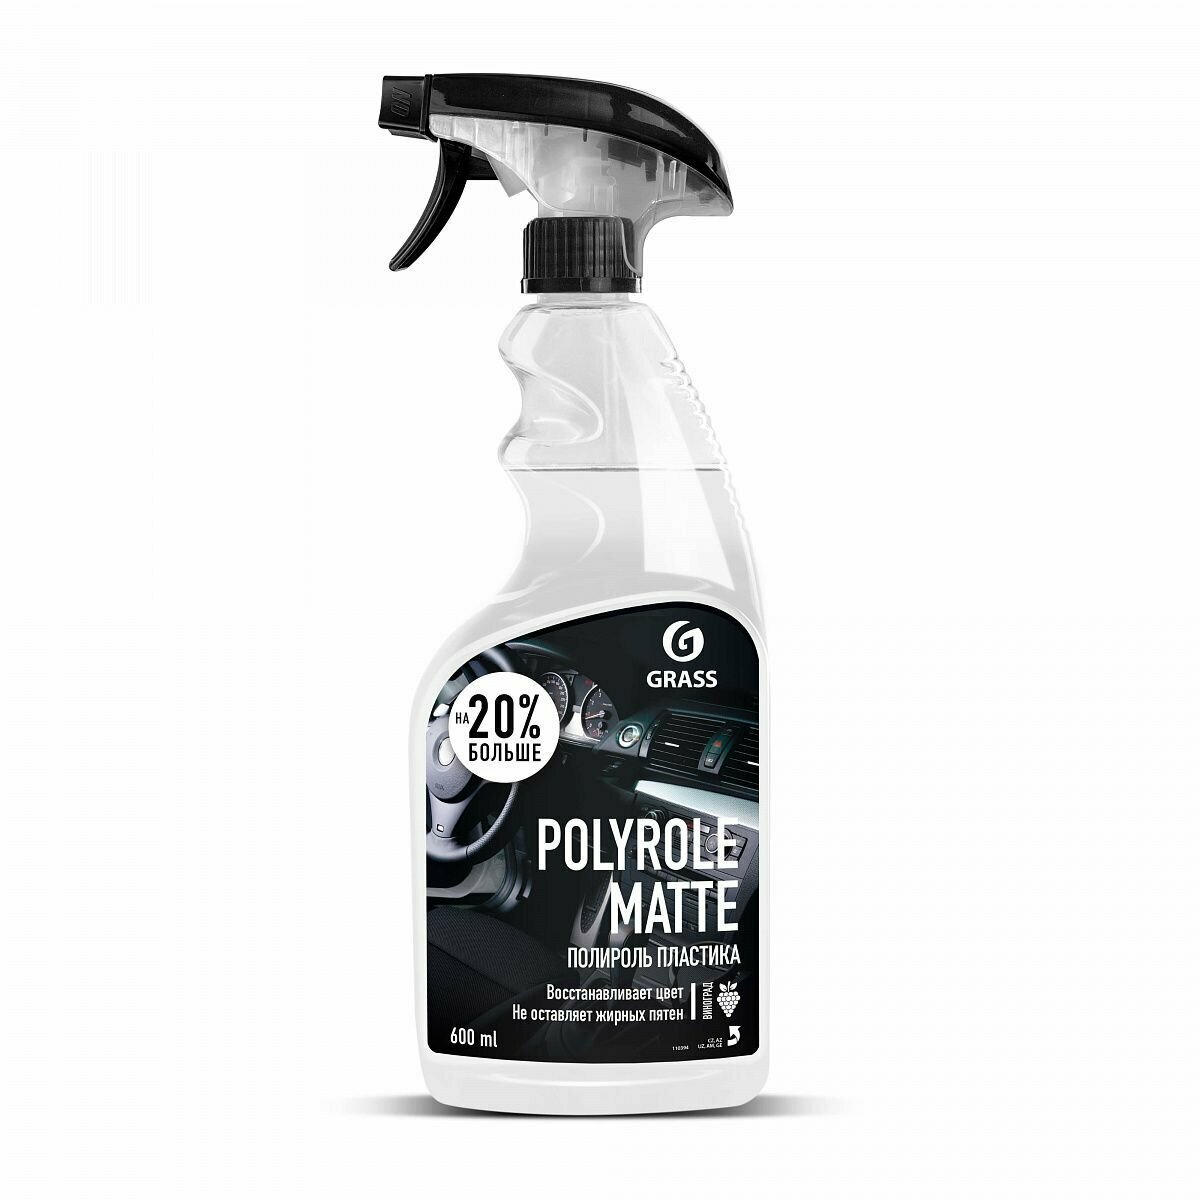 GRASS Полироль пластика матовый Polerole Matte 0,6л +20%